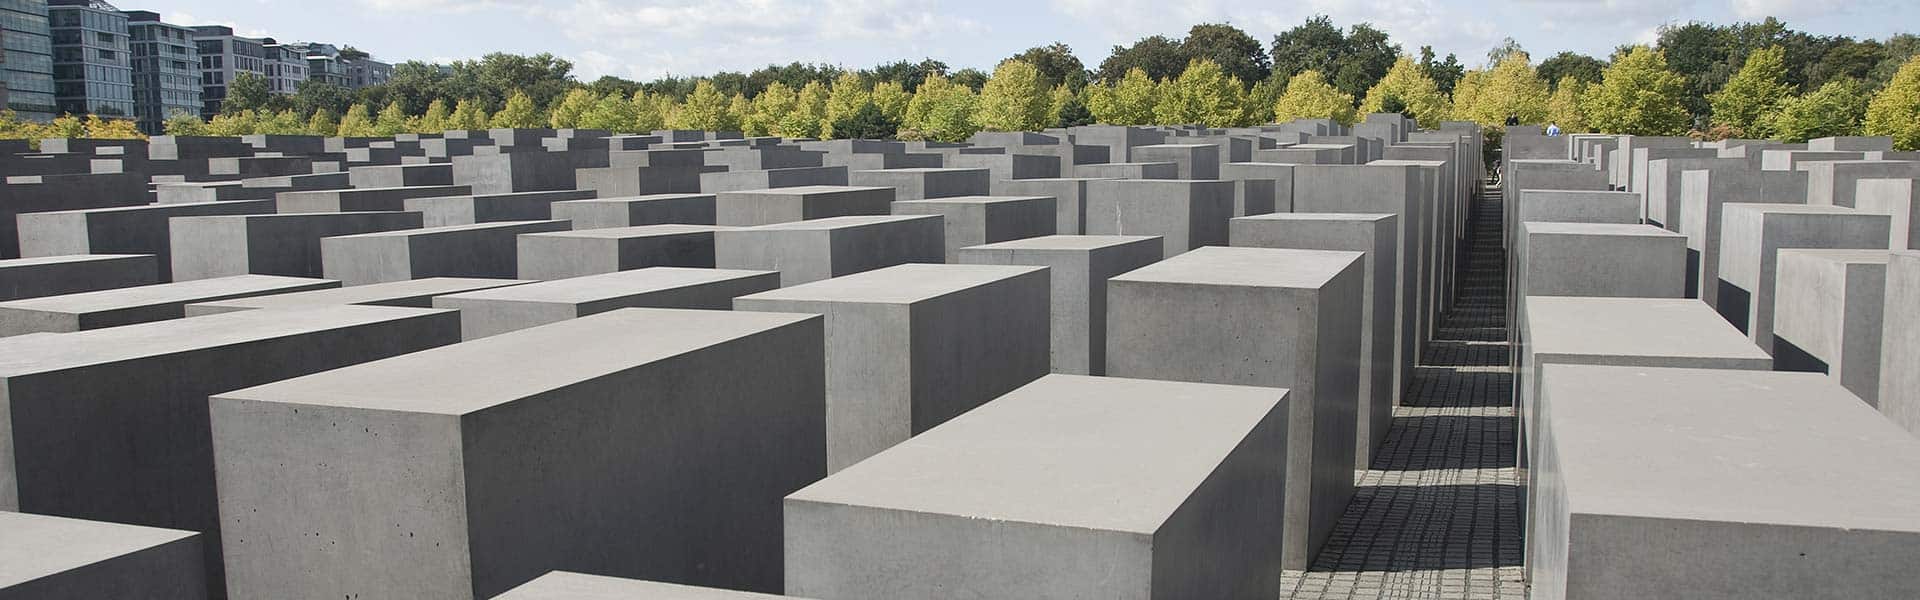 Mahnen, um nicht zu vergessen: Das Holocaust-Mahnmal in Berlin